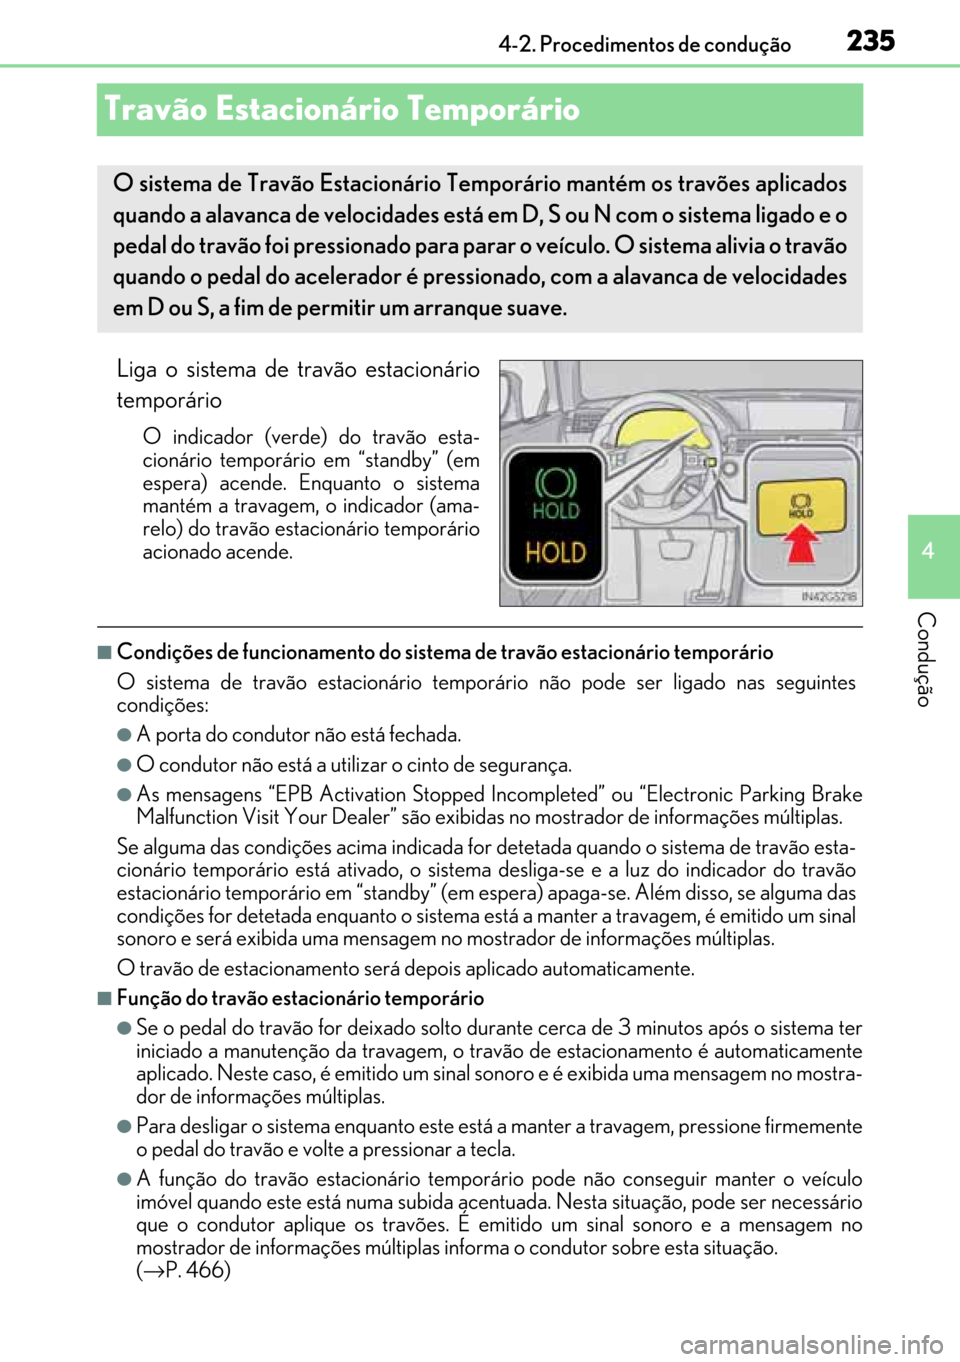 Lexus GS450h 2017  Manual do proprietário (in Portuguese) 235
235235 235
4 4-2. Procedimentos de condução
Condução
Travão Estacionário Temporário 
Liga o sistema de travão estacionário
temporário
O indicador (verde) do travão esta-
cionário tempo